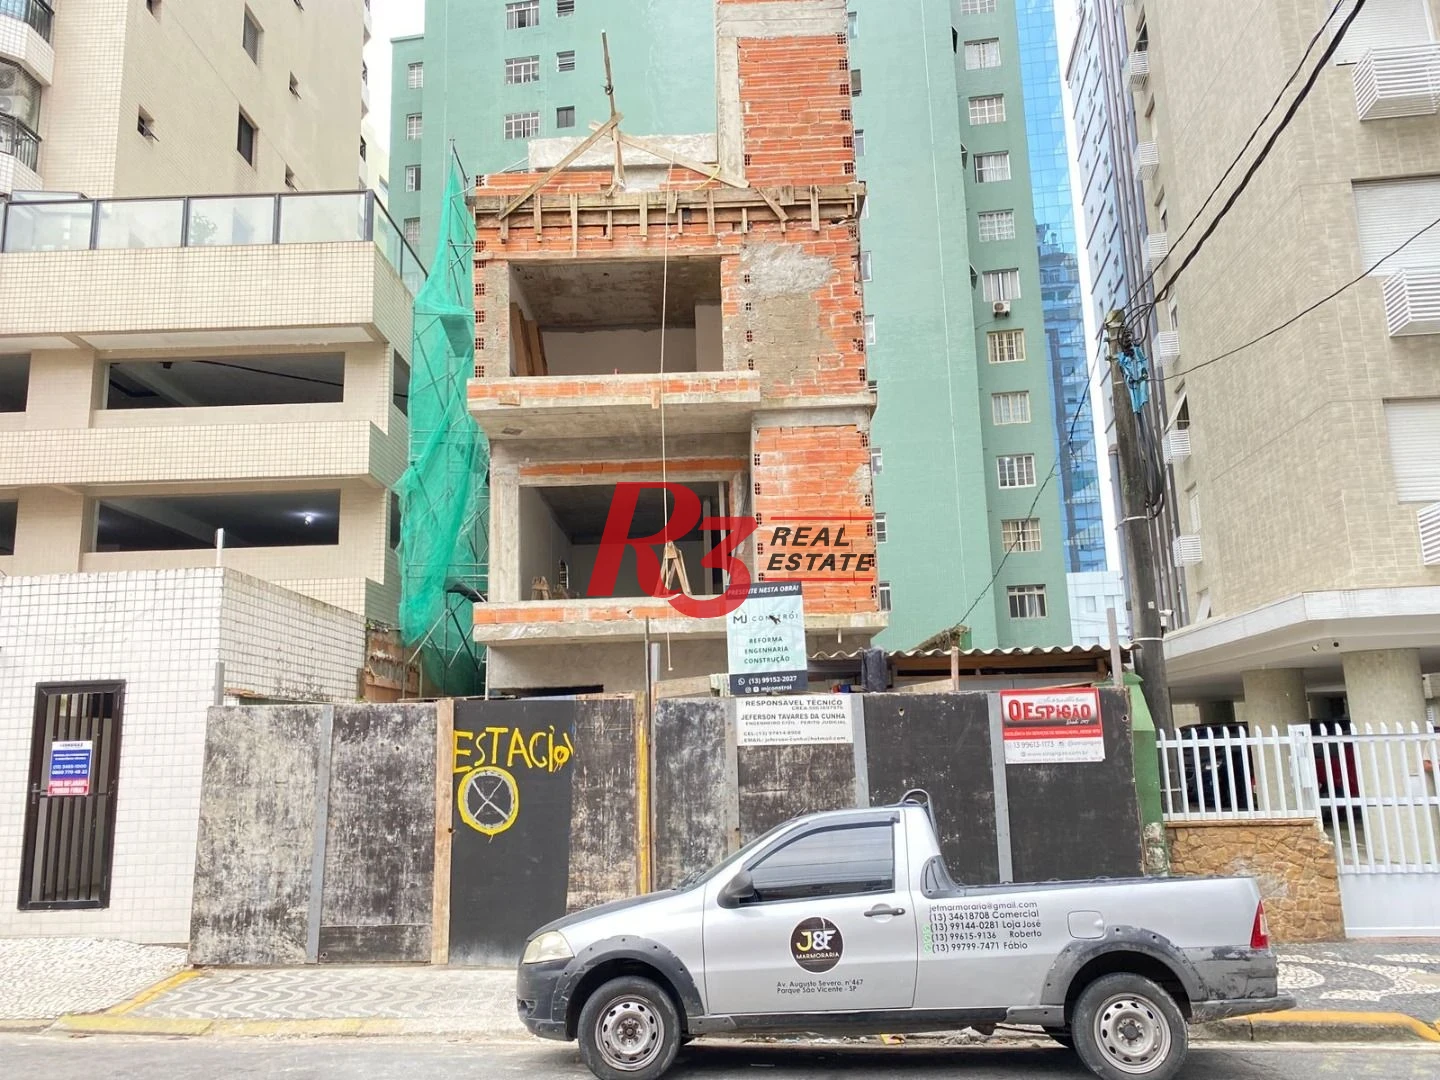 Casa com 3 suítes à venda, 150 m² por R$ 1.125.000 - José Menino - Santos/SP